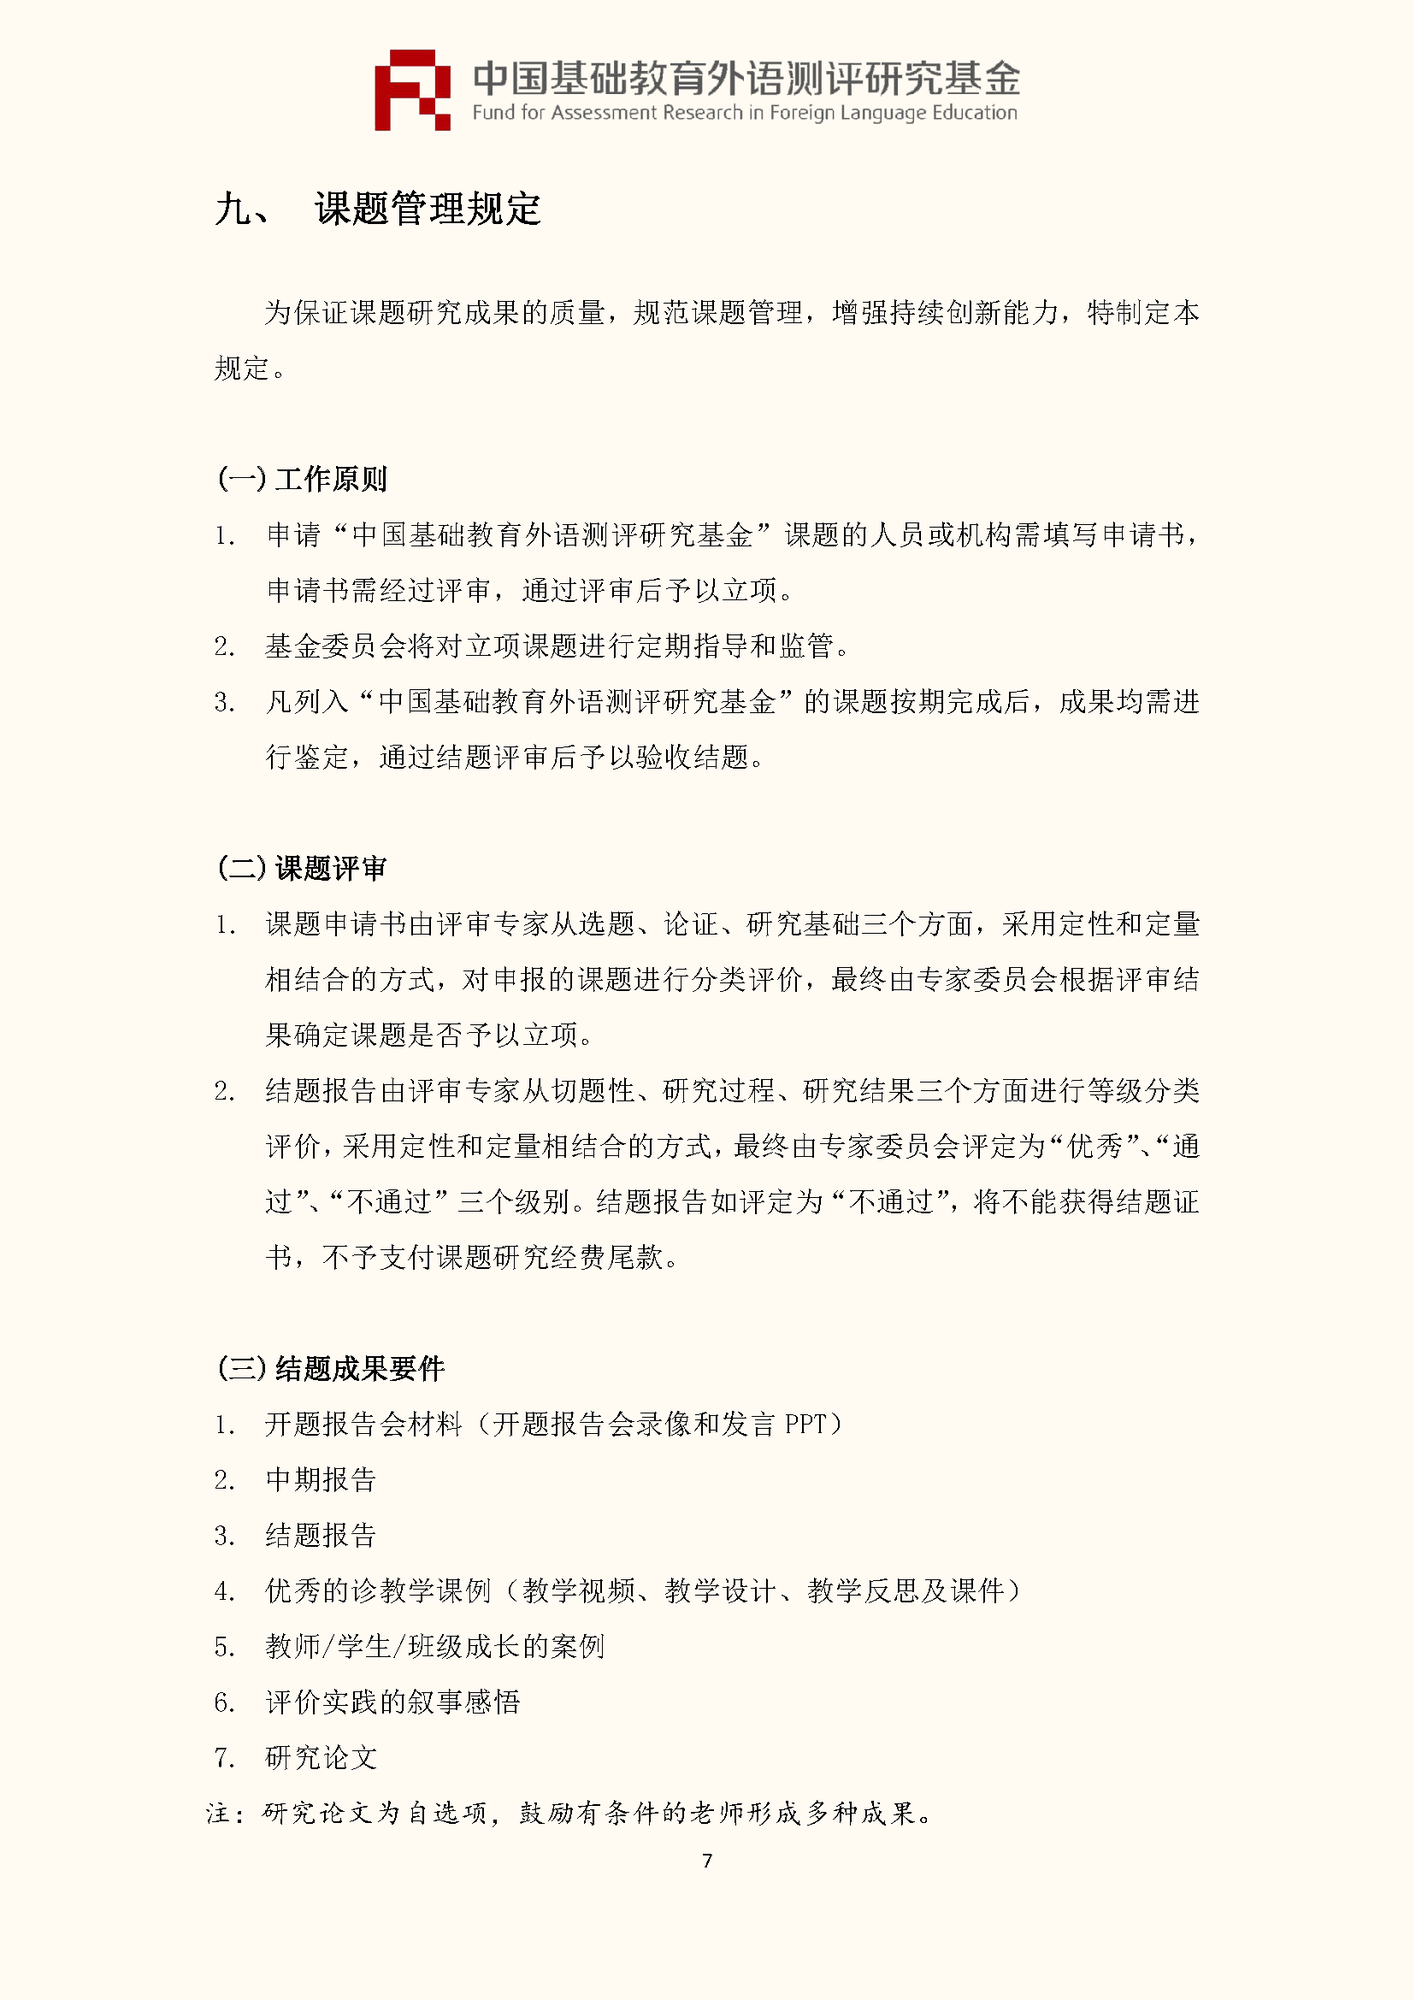 ”中国基础教育外语测评研究基金“项目第四期课题申报指南_页面_09